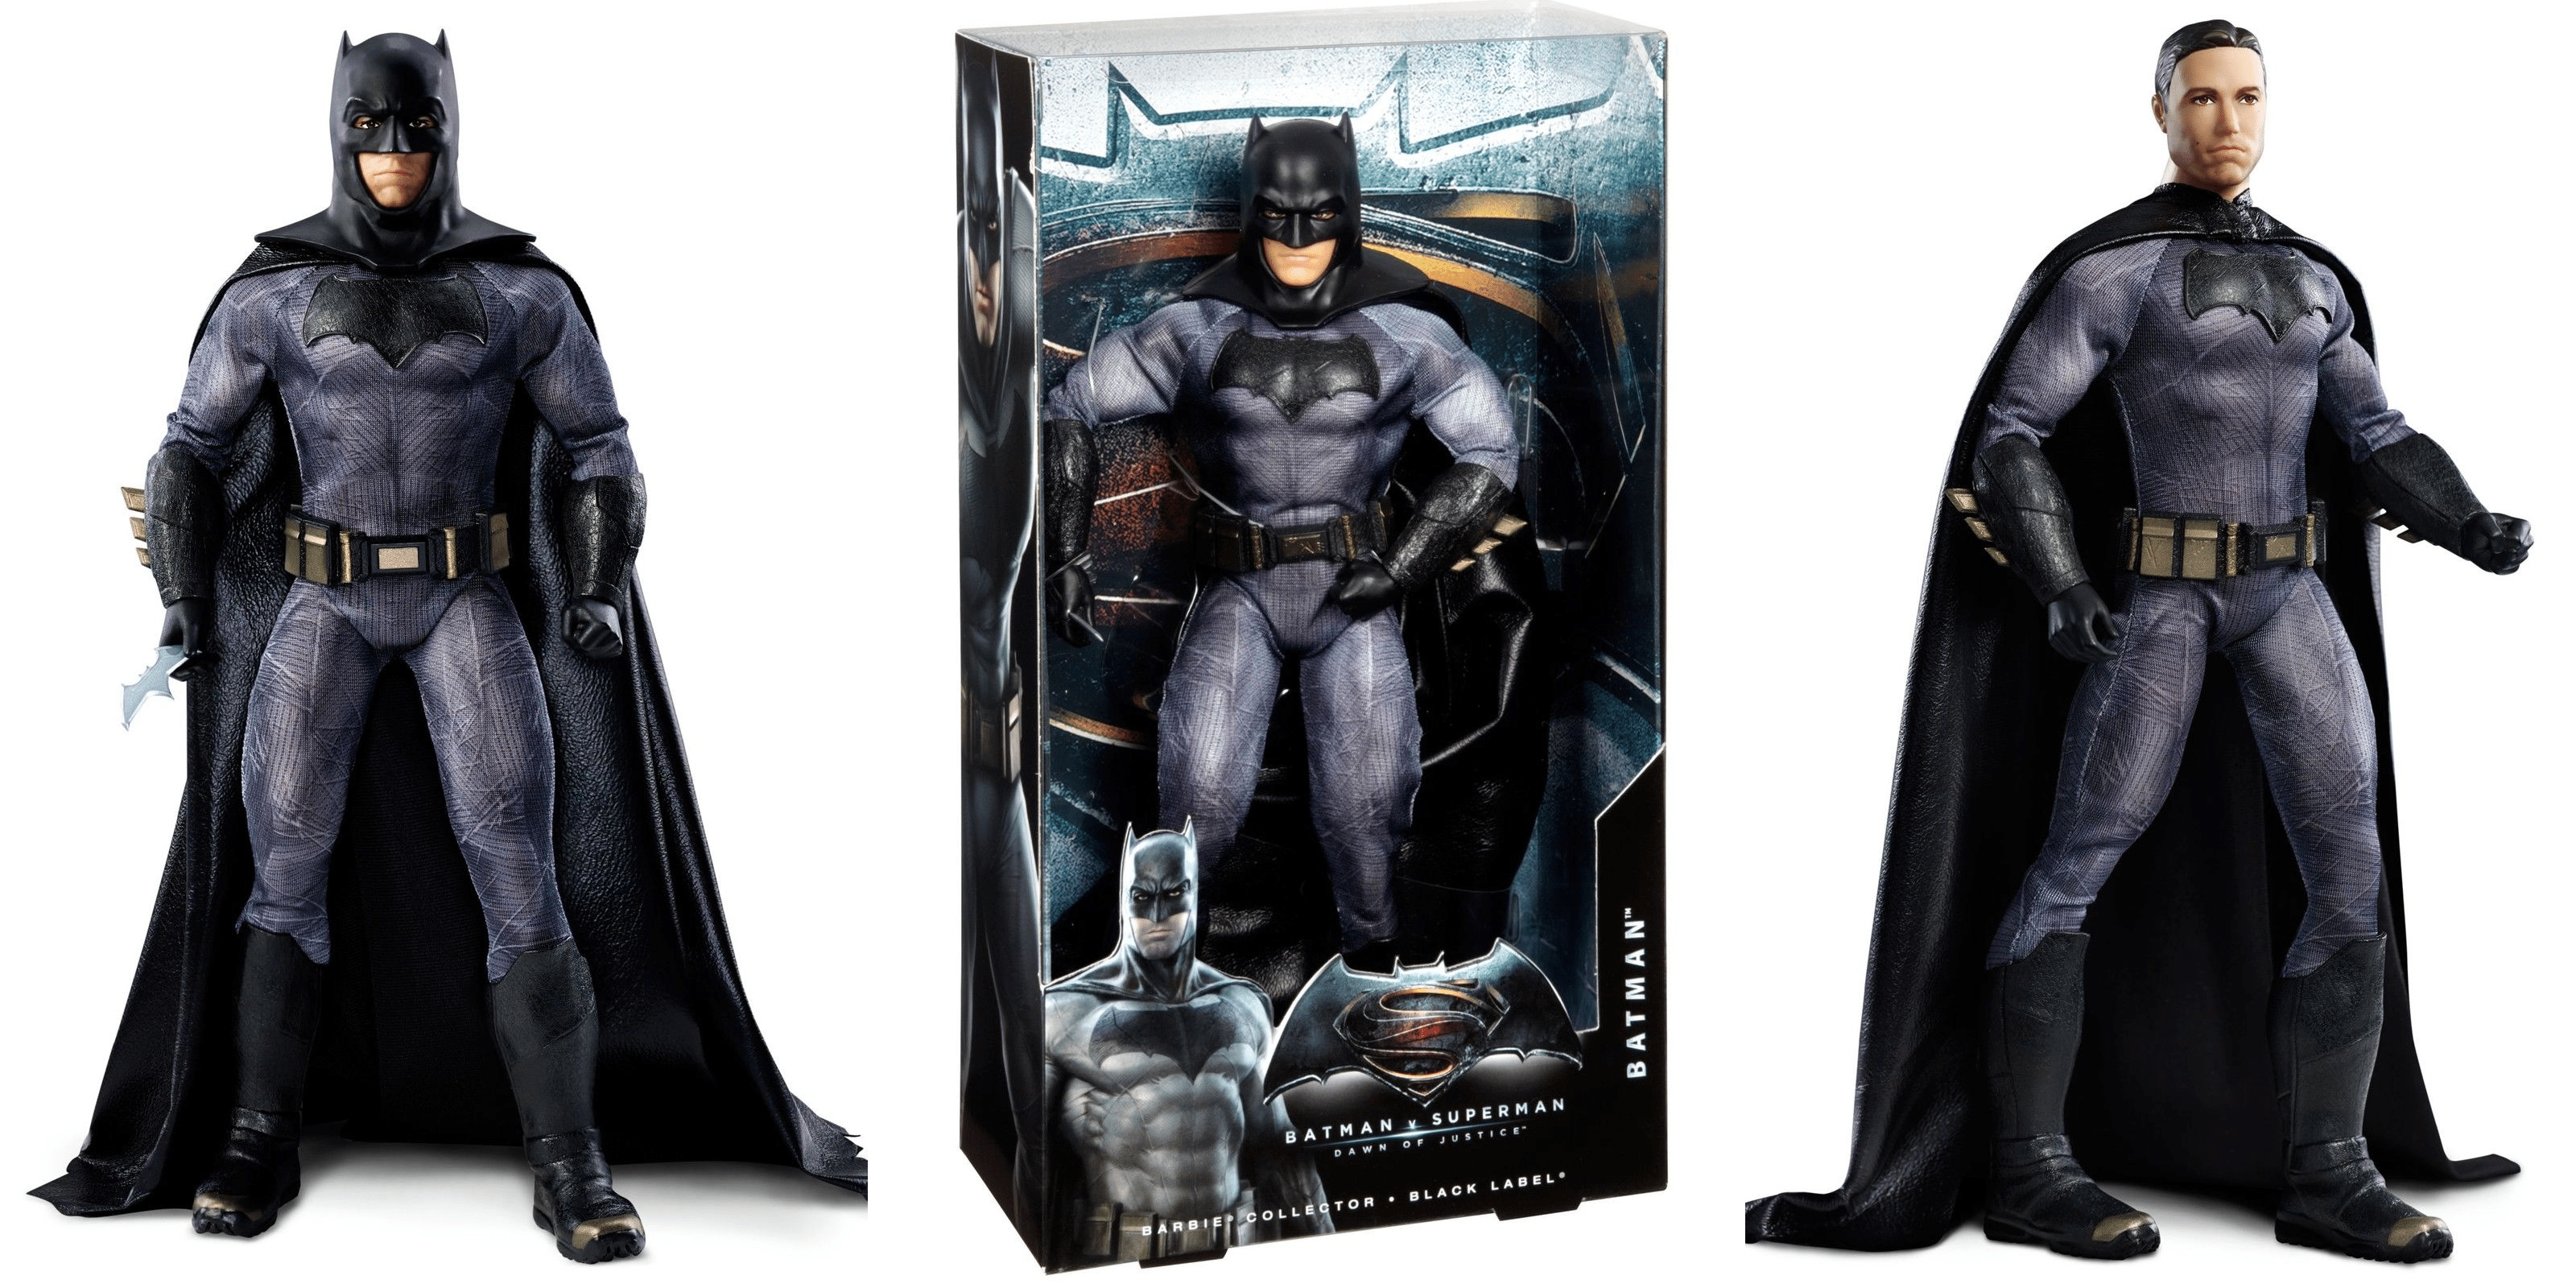 Batman v Superman: Dawn of Justice Batman Figure Only $14.99!